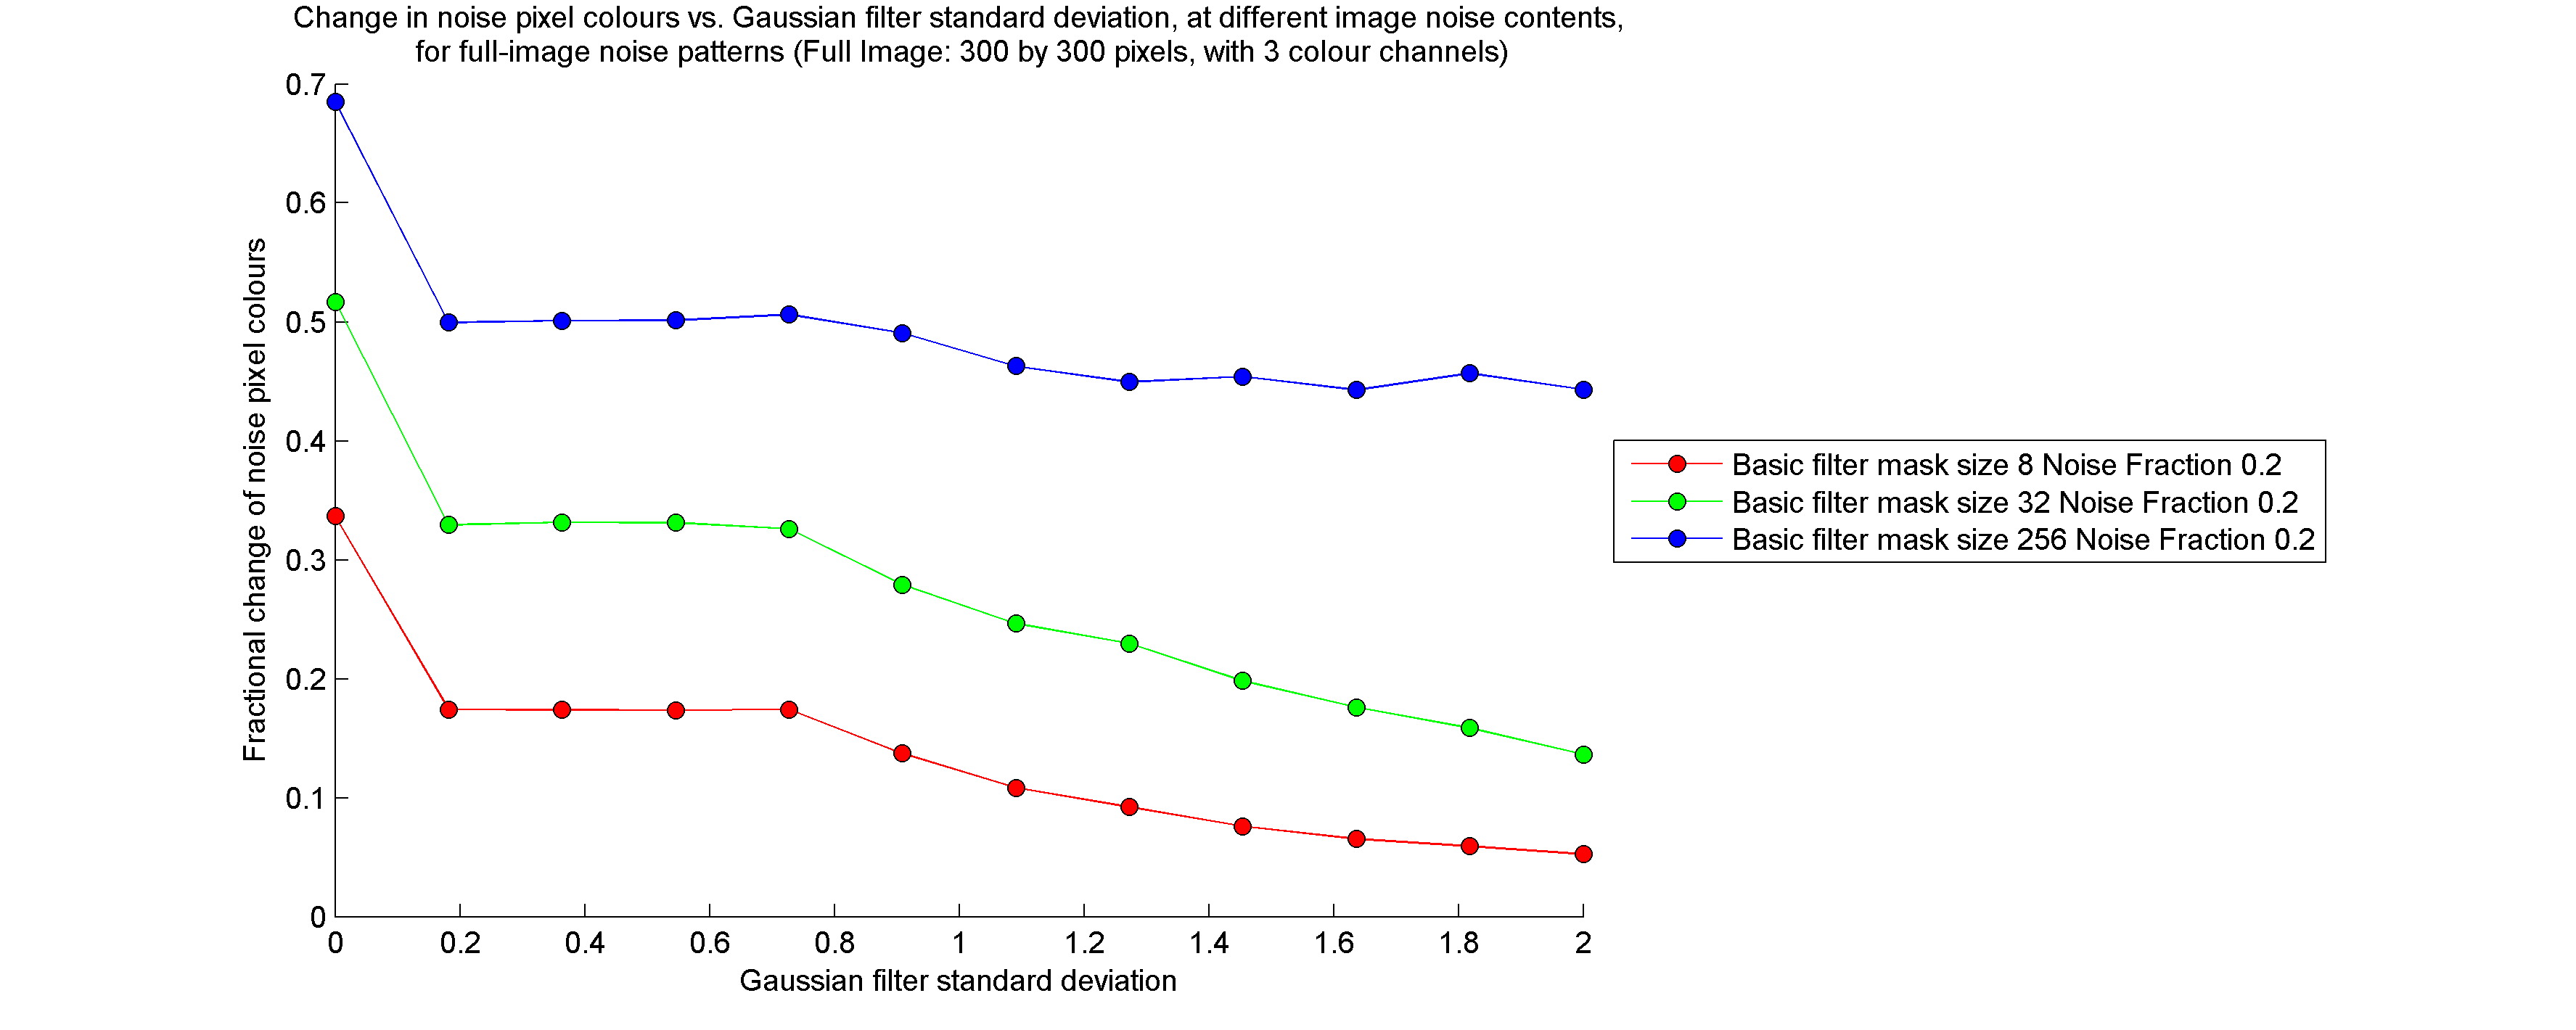 Noise pixel colour change vs Gaussian standard deviation